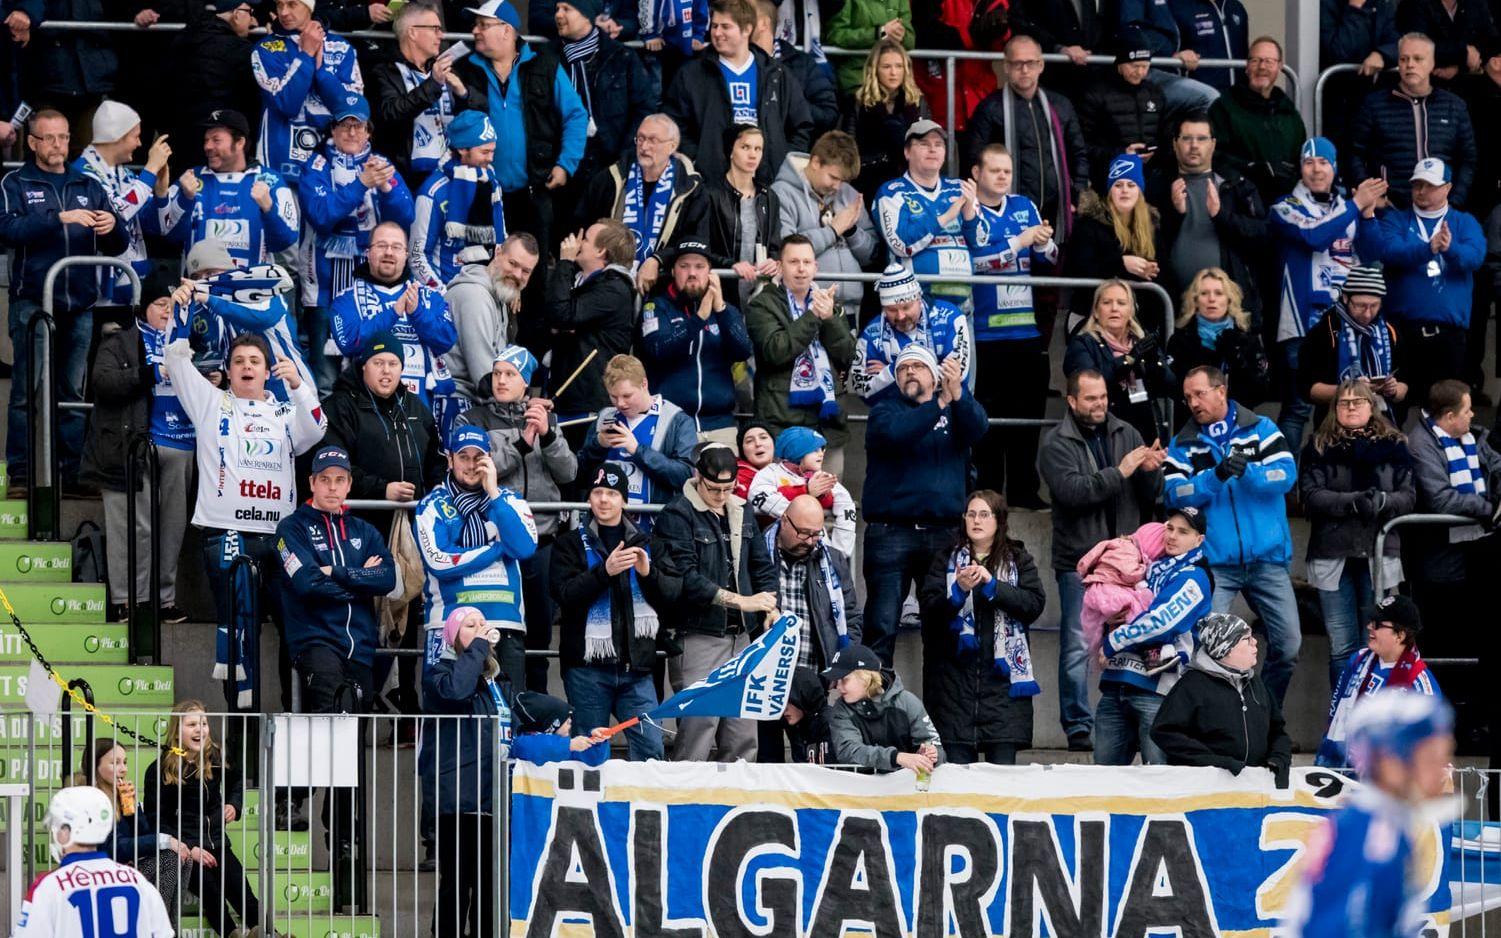 Bild: Sebastian LaMotte. IFK har som vanligt bra stöd av Älgarna på läktarplats.